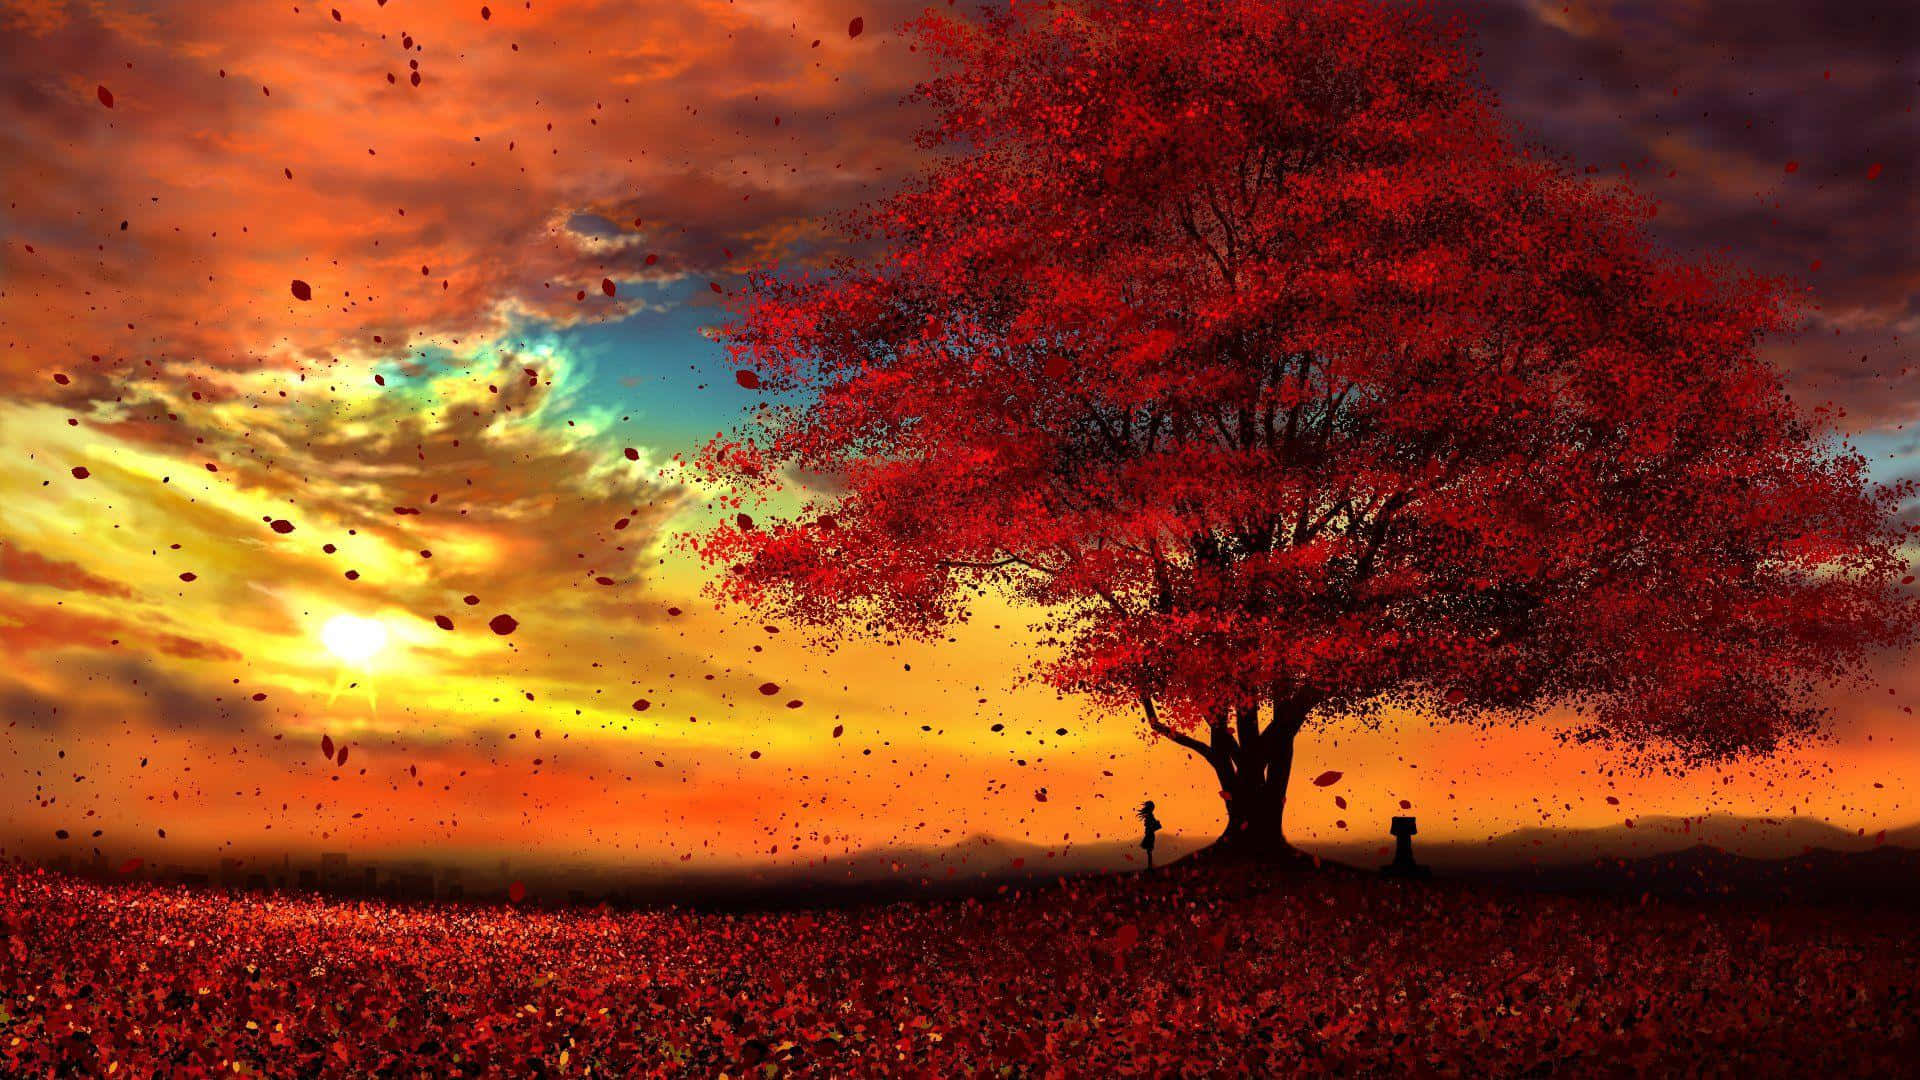 Diesilhouette Eines Majestätischen Roten Baumes, Erleuchtet Vom Sonnenaufgang. Wallpaper